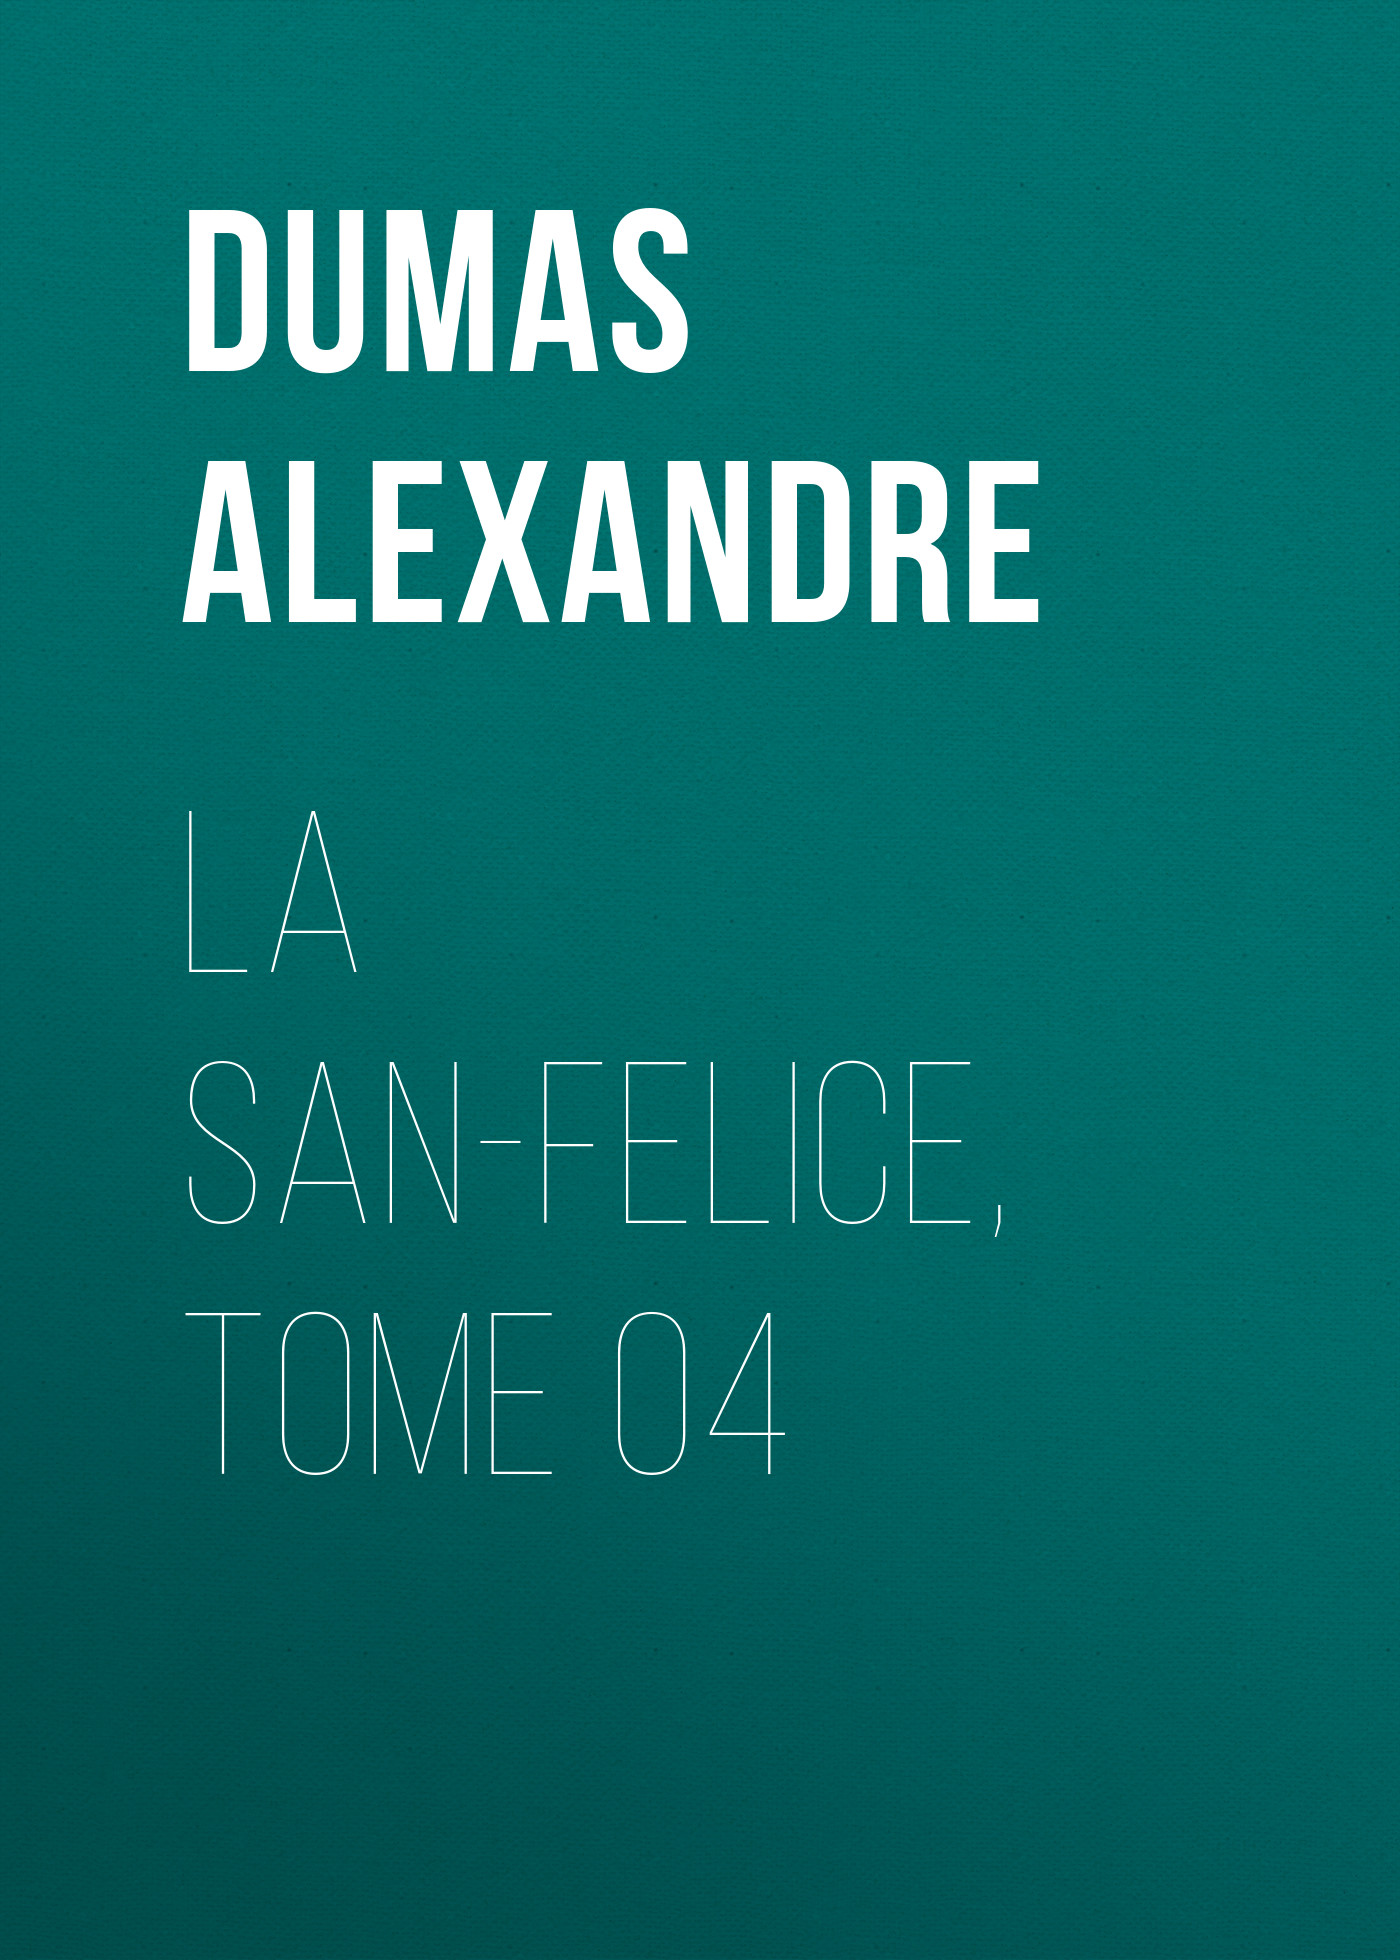 Книга La San-Felice, Tome 04 из серии , созданная Alexandre Dumas, может относится к жанру Литература 19 века, Зарубежная старинная литература, Зарубежная классика. Стоимость электронной книги La San-Felice, Tome 04 с идентификатором 25203455 составляет 0 руб.